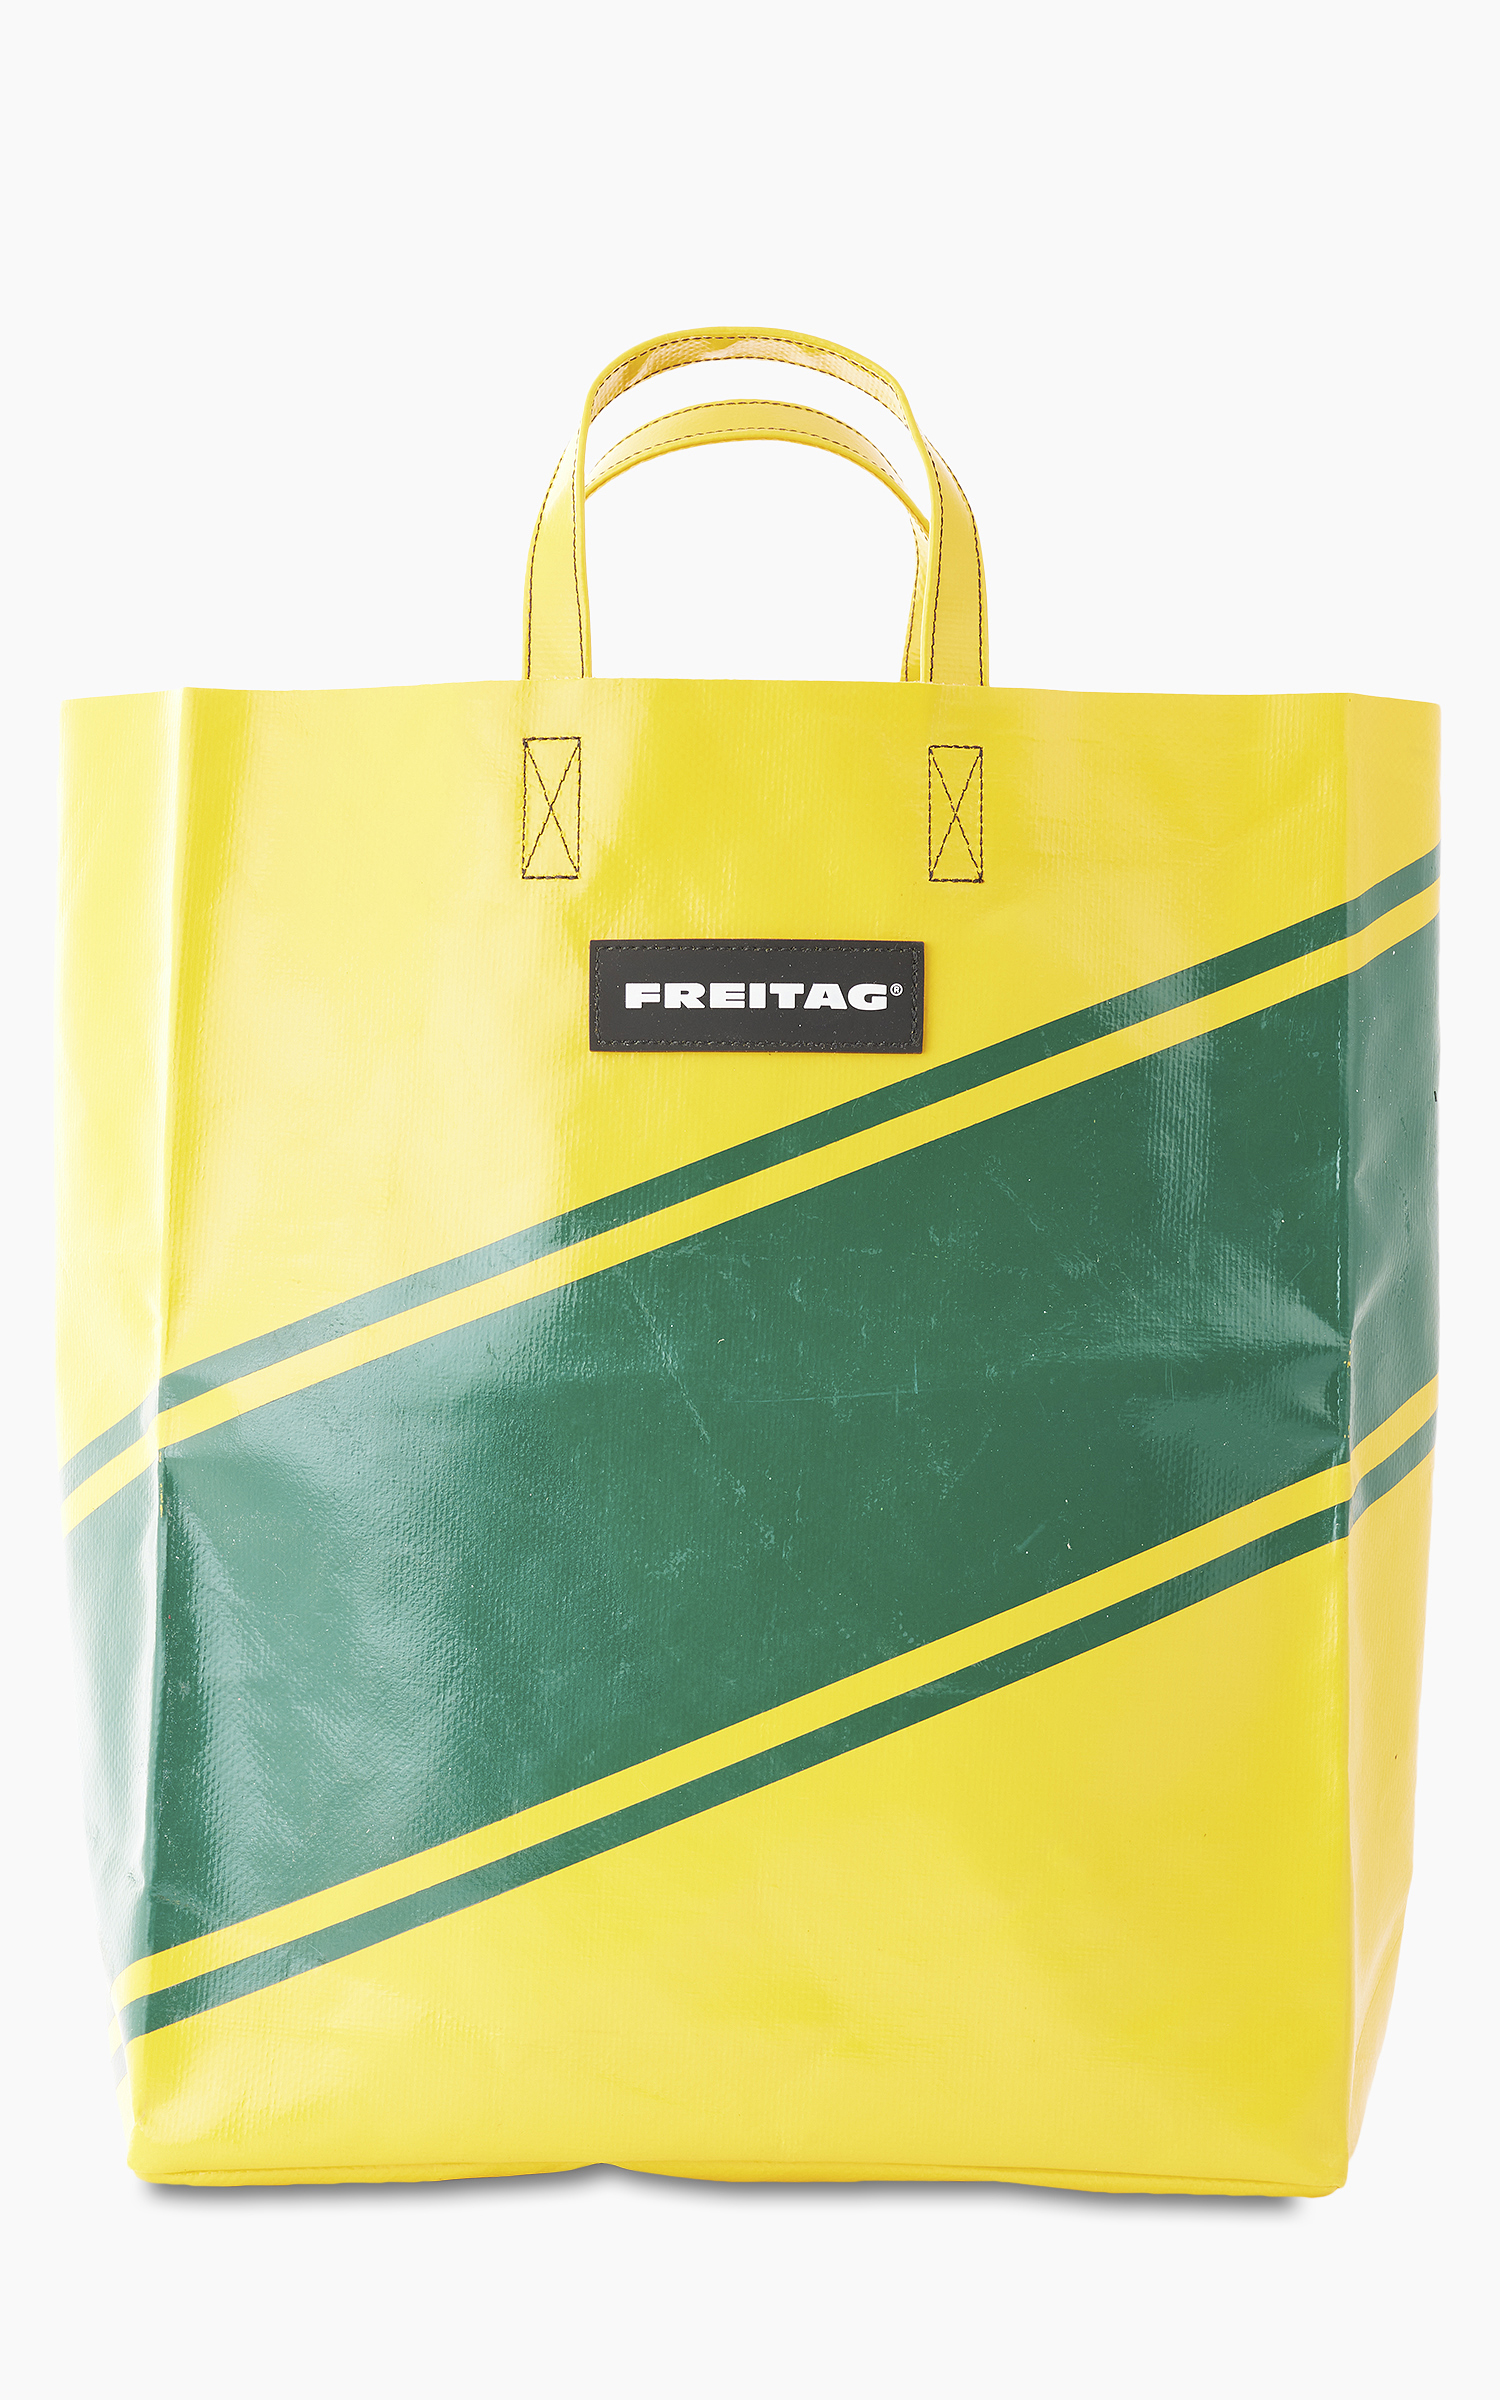 Freitag F52 Miami Vice Shopping Bag Yellow 15-1 | Cultizm